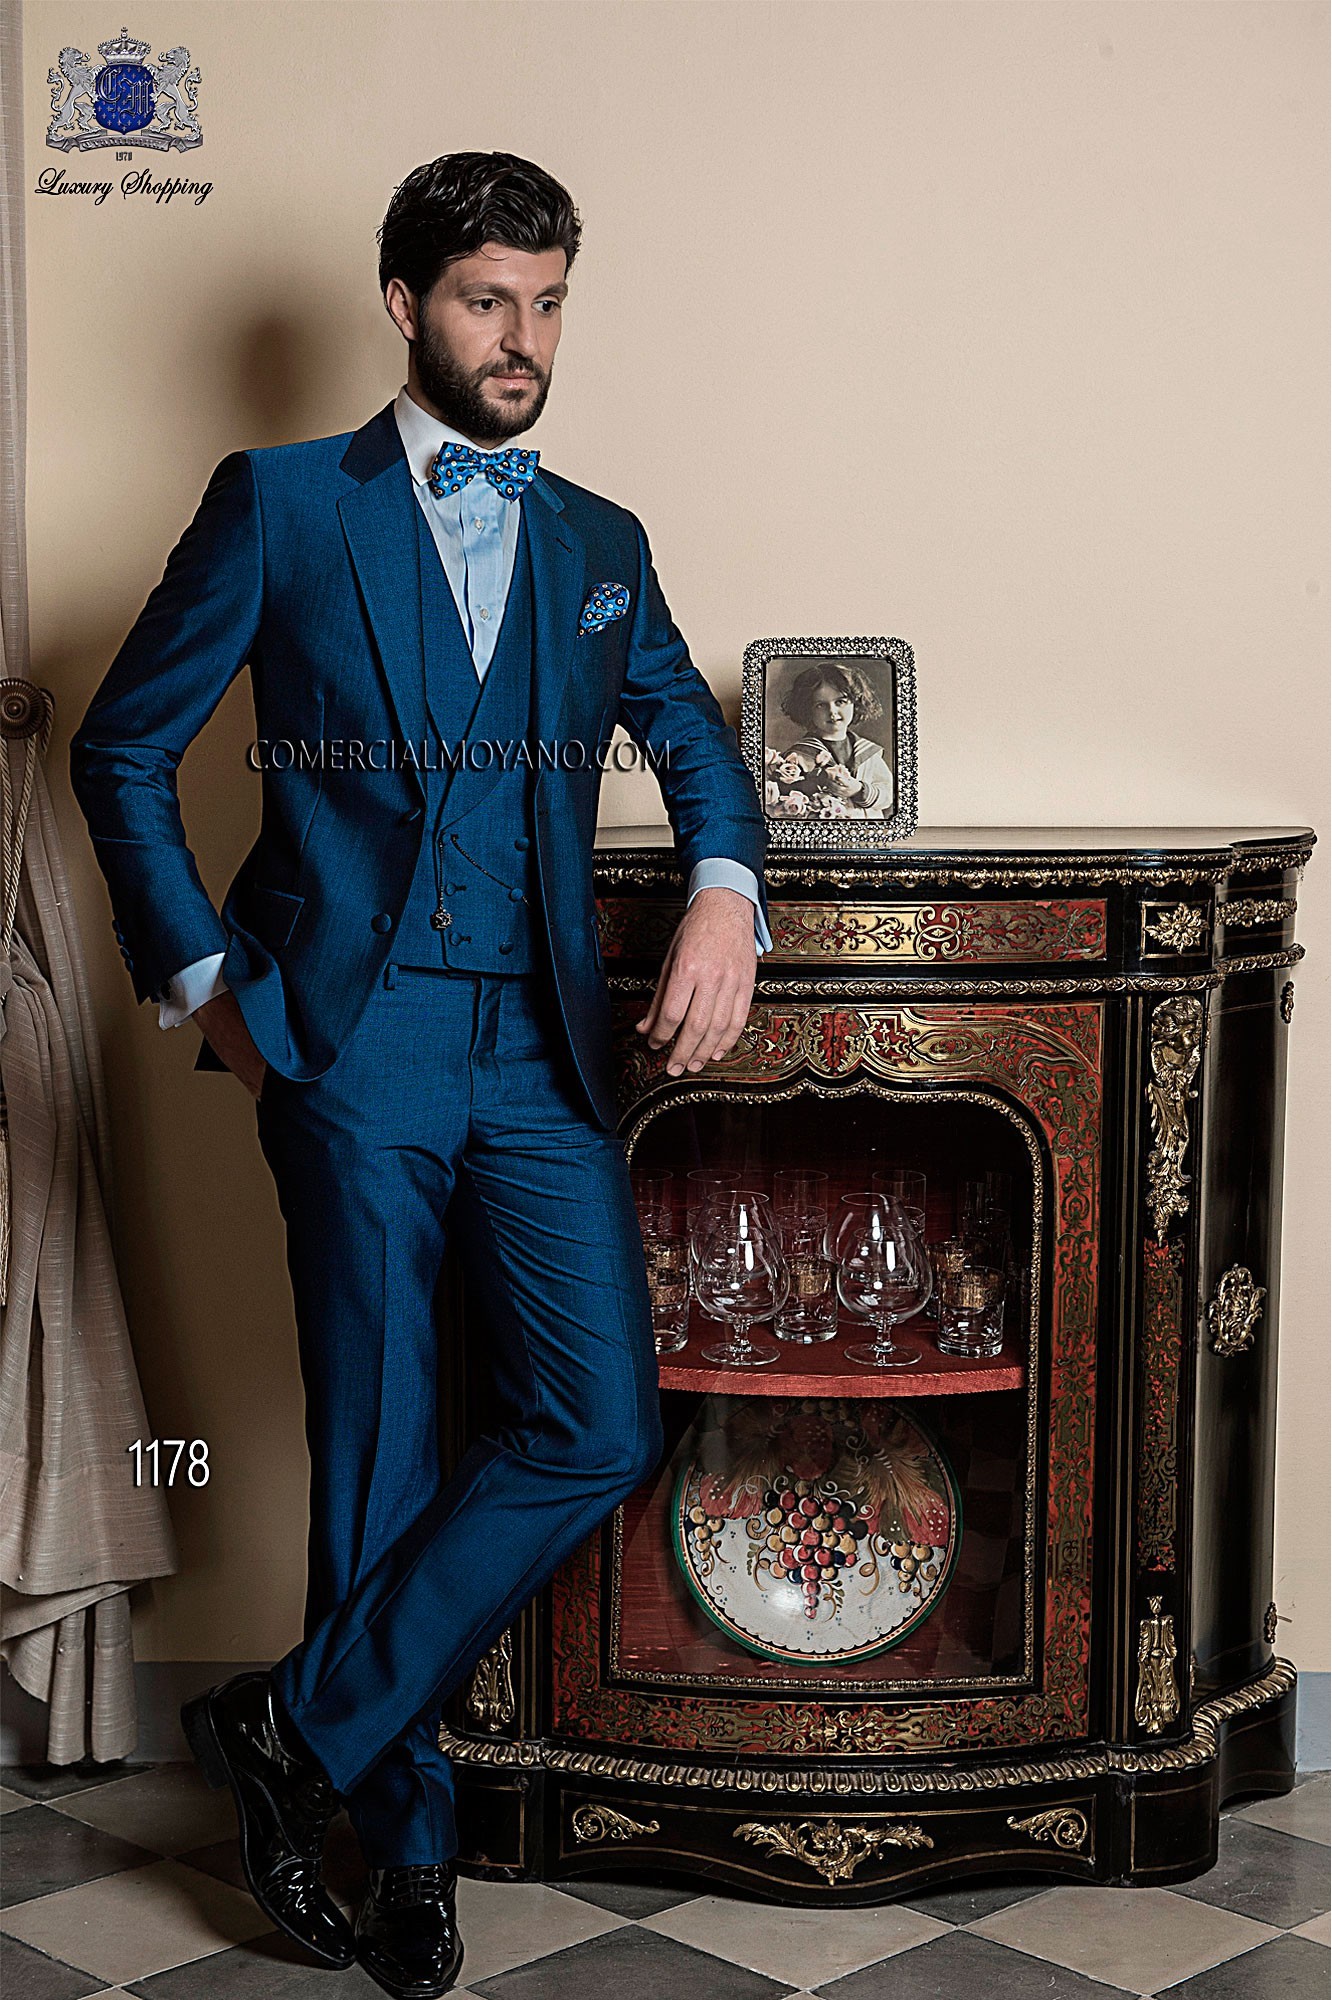 Gentleman blue men wedding suit model 1178 Mario Moyano